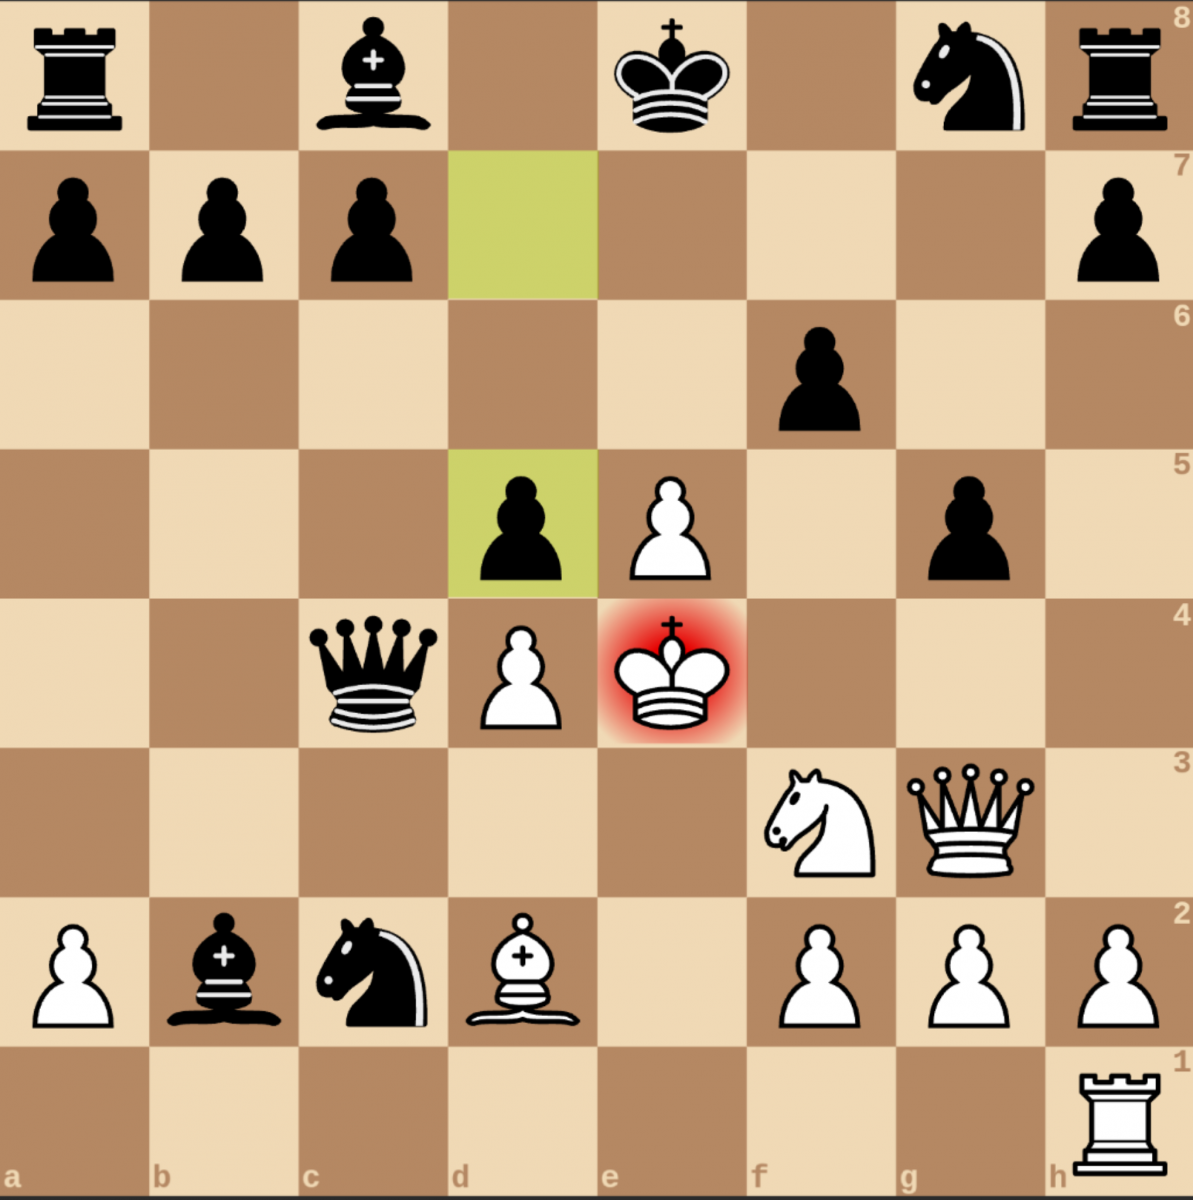 En passant в шахматах